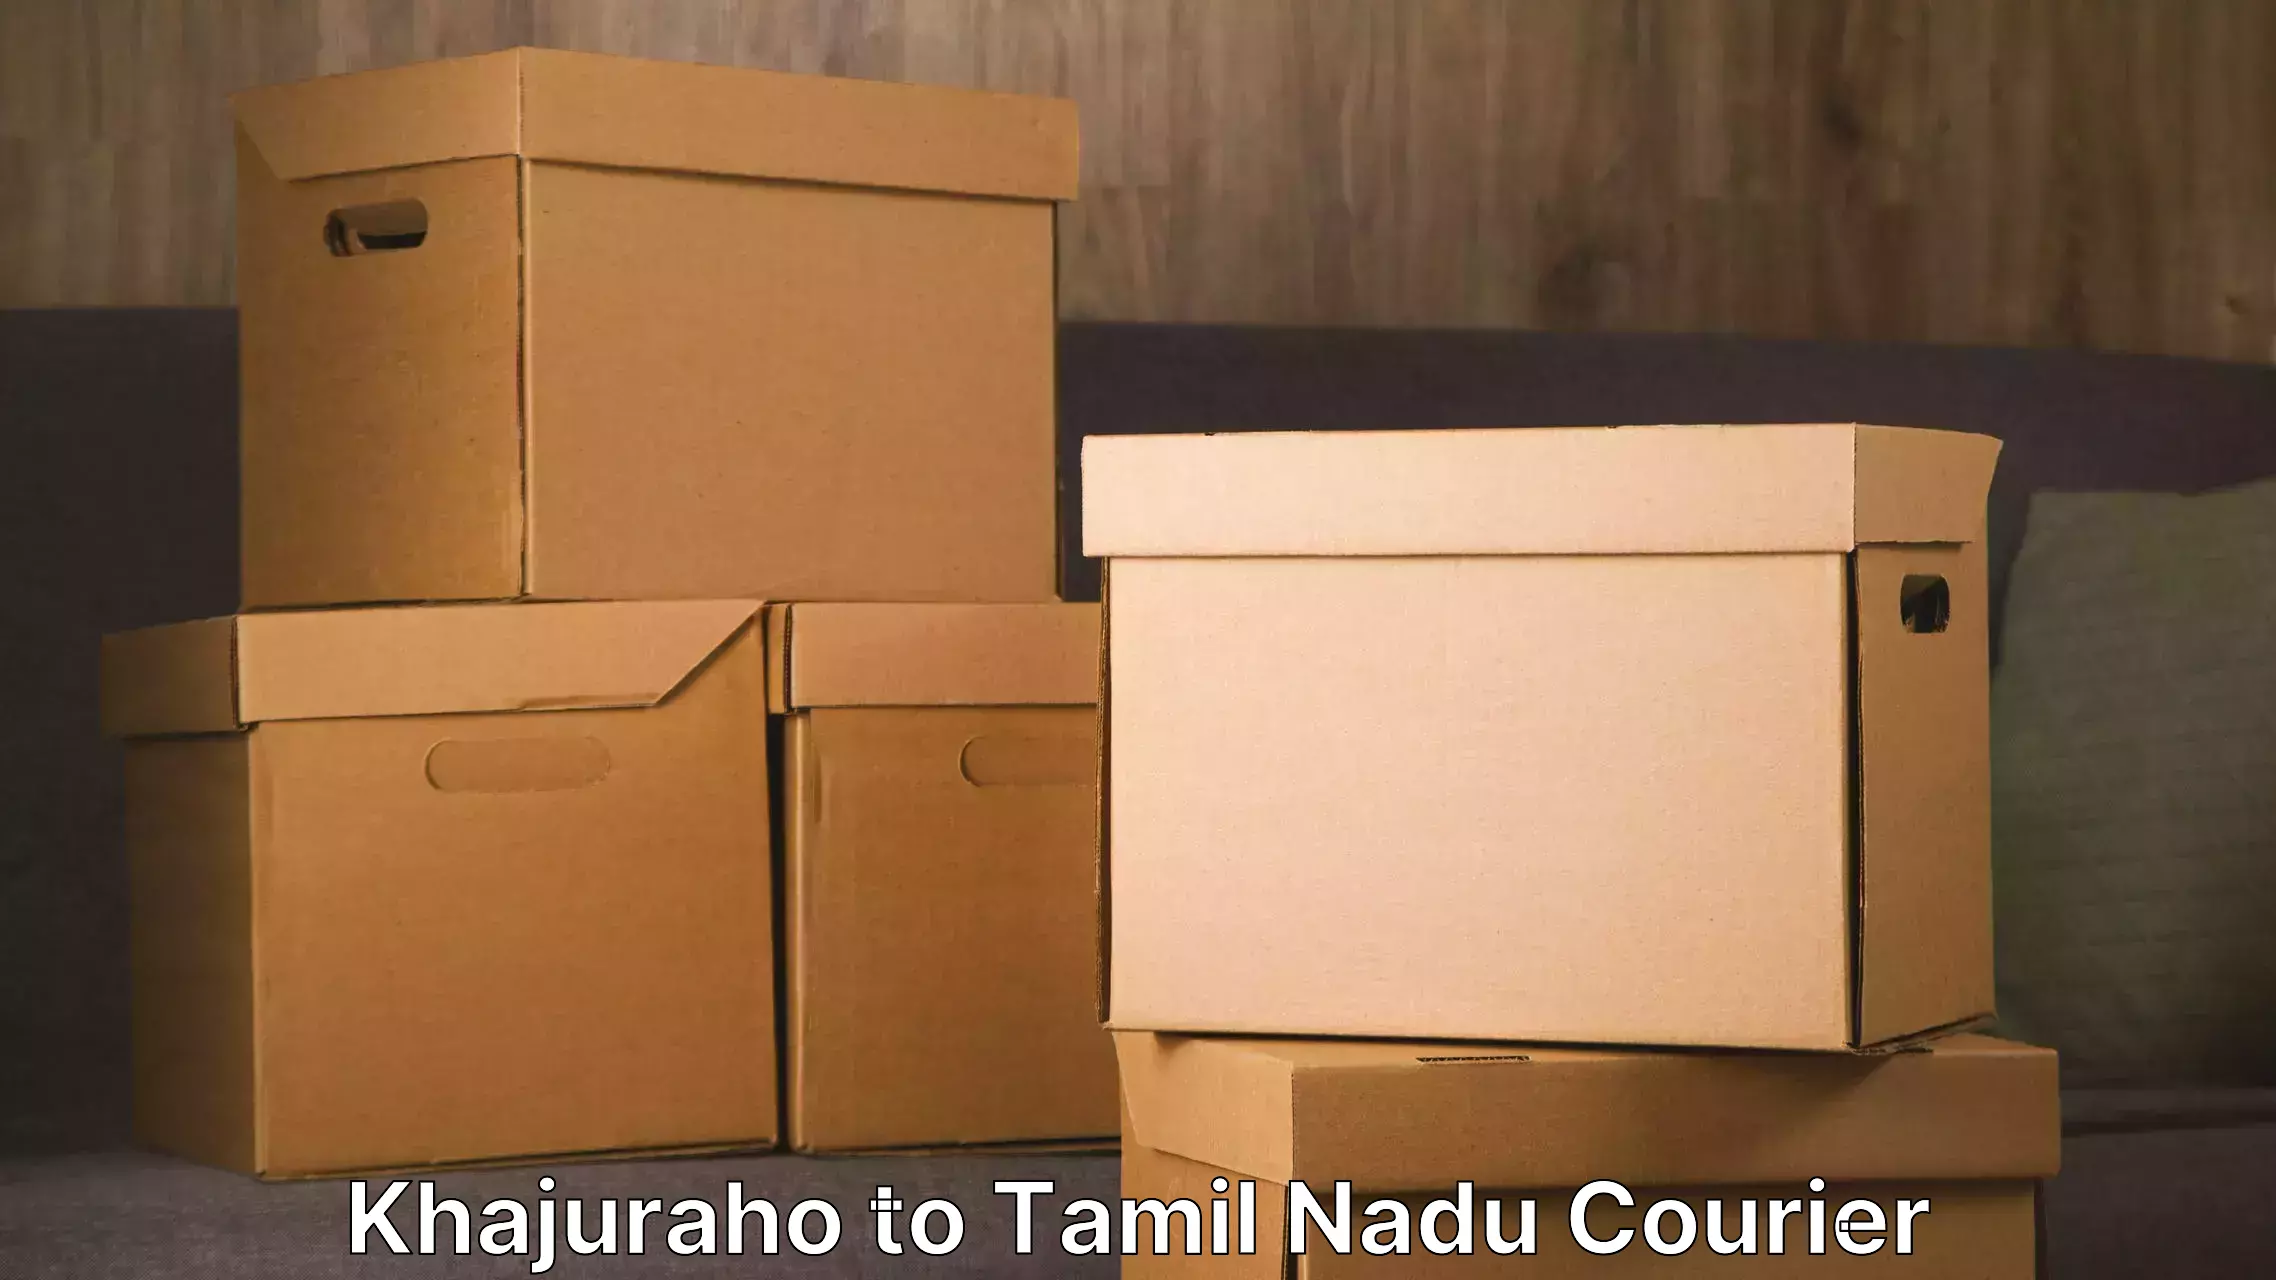 Furniture relocation experts Khajuraho to Chennai Port